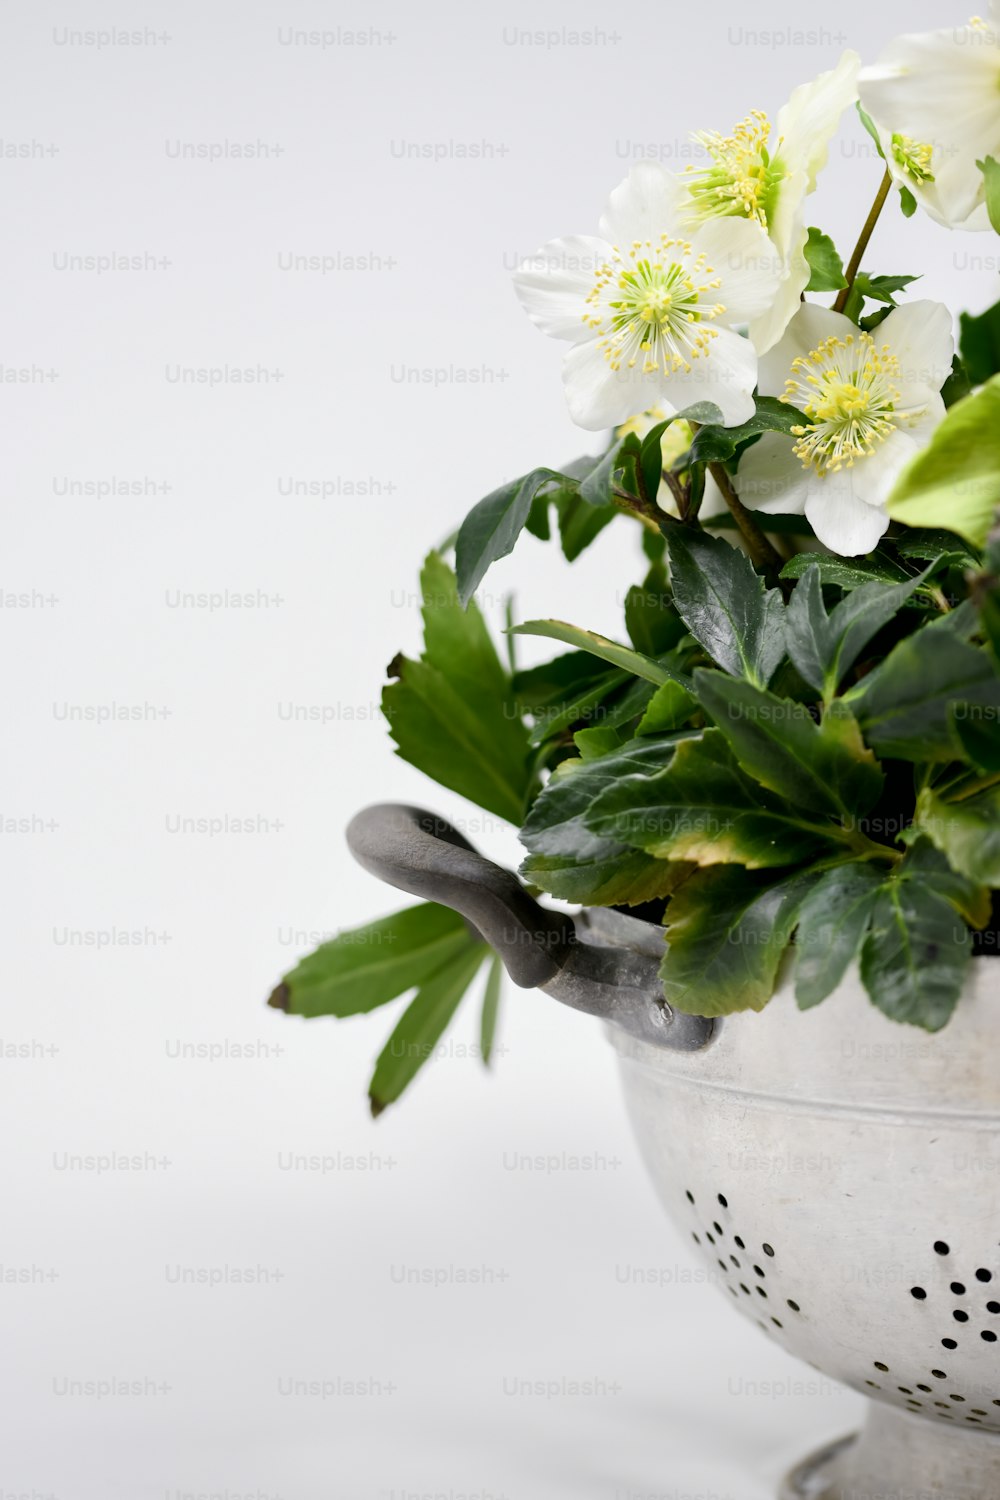 une plante en pot avec des fleurs blanches et des feuilles vertes